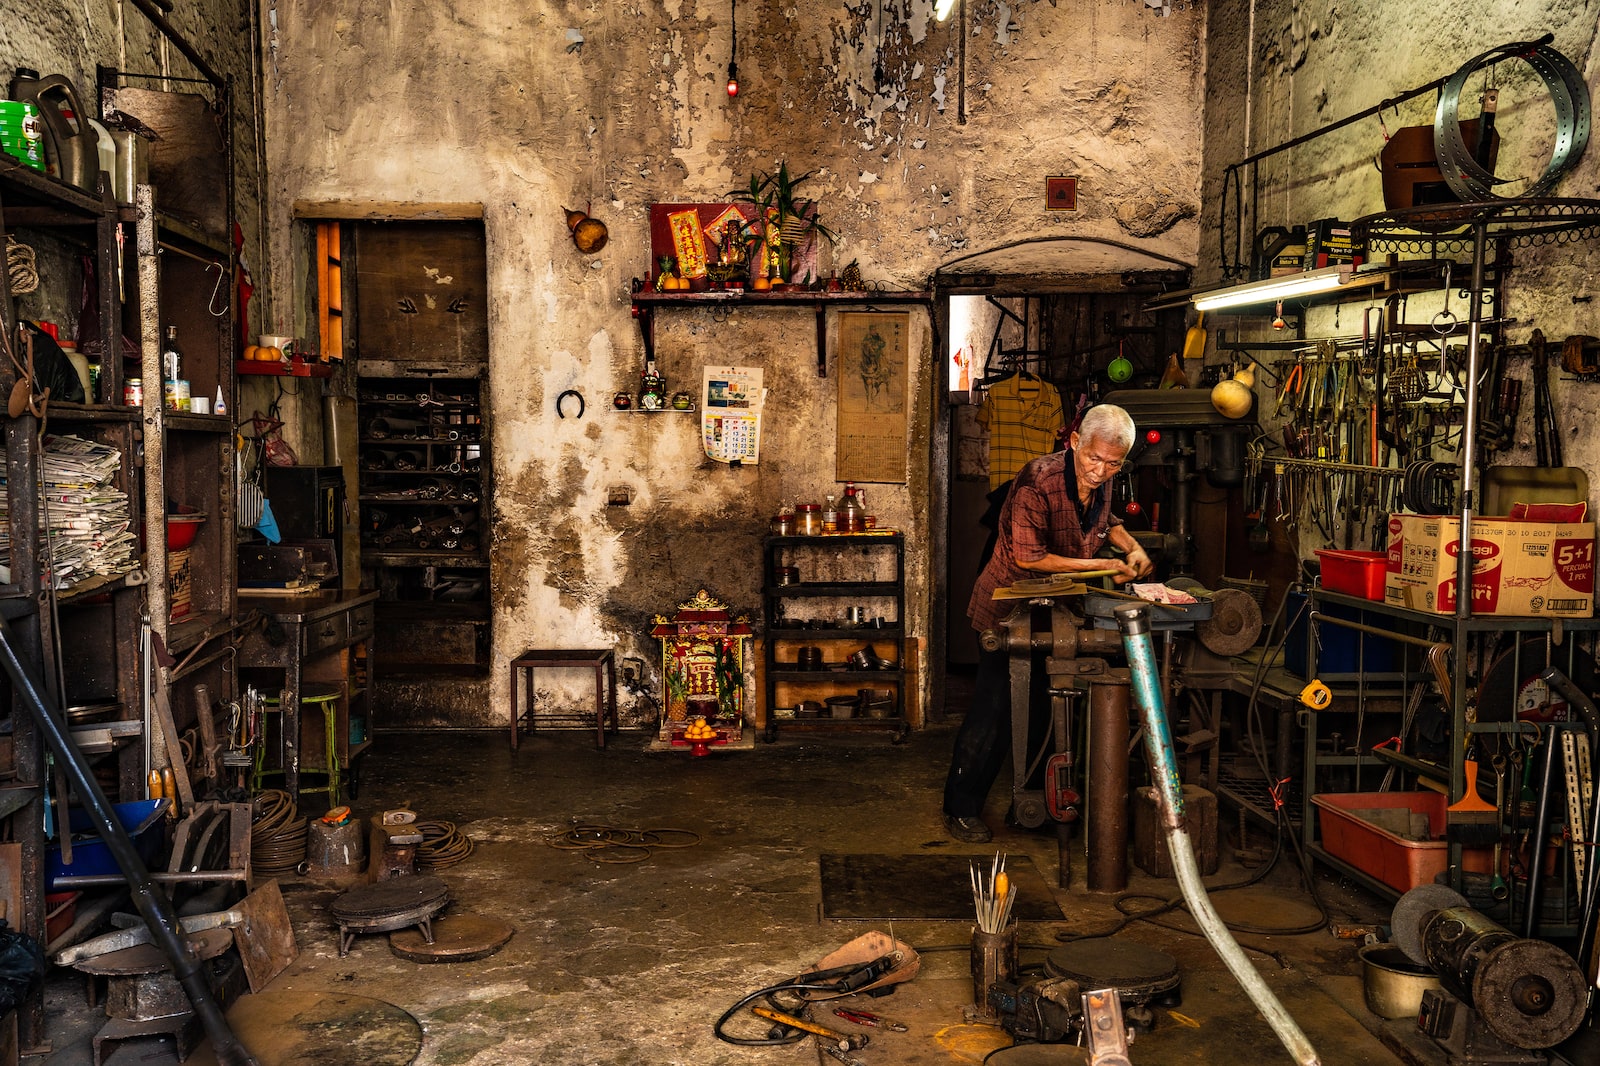 Inside an old shophouse of a cobbler